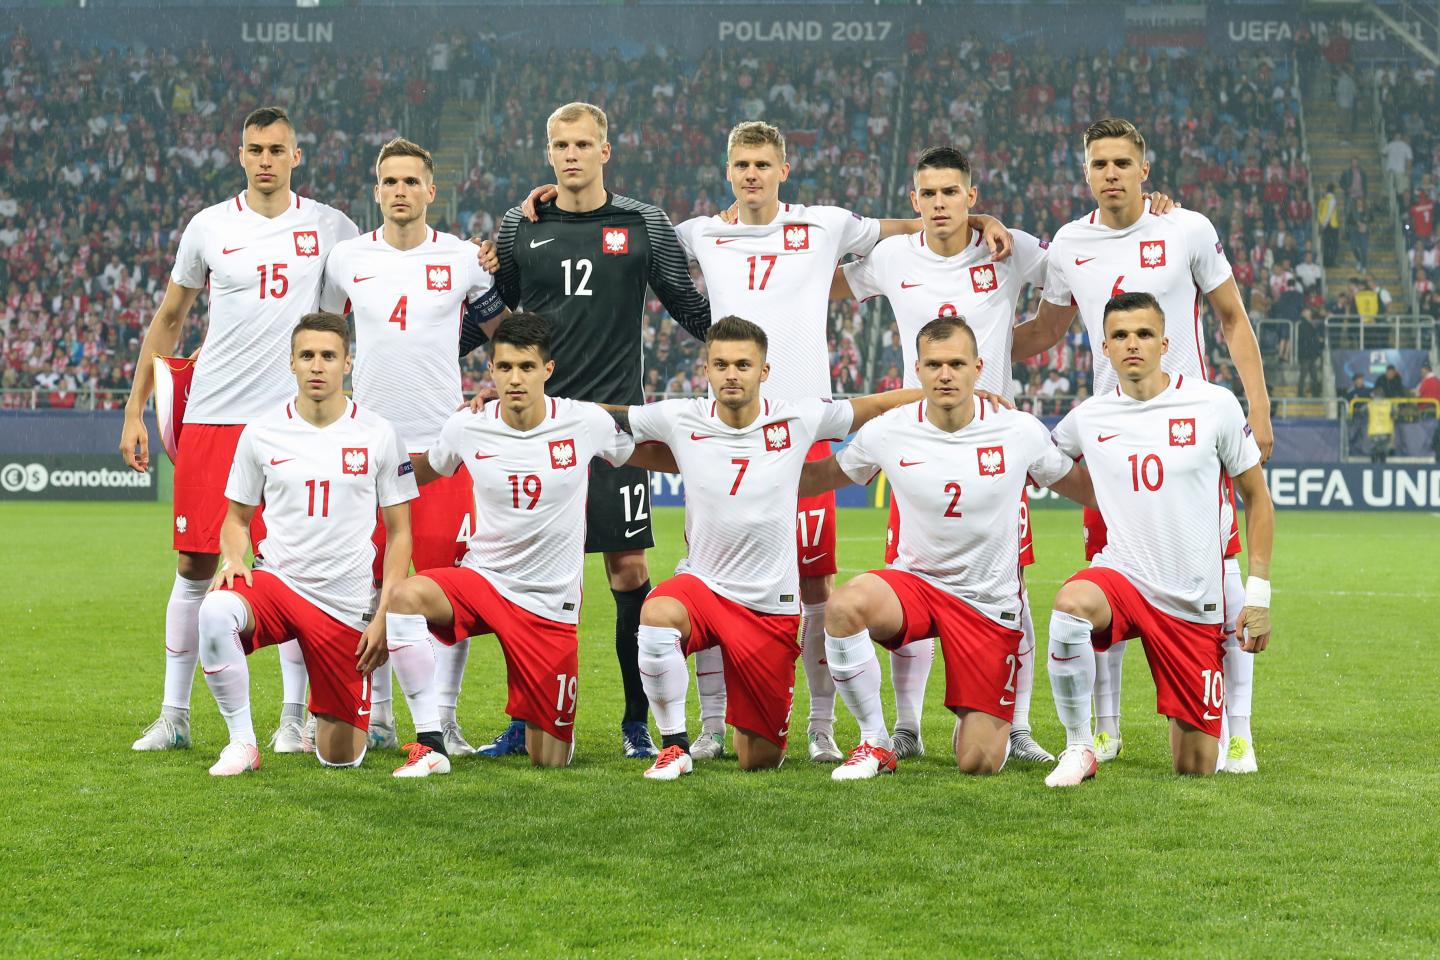 Grupowe zdjęcie reprezentacji Polski do lat 21 przed meczem ze Słowacją na Euro 2017.